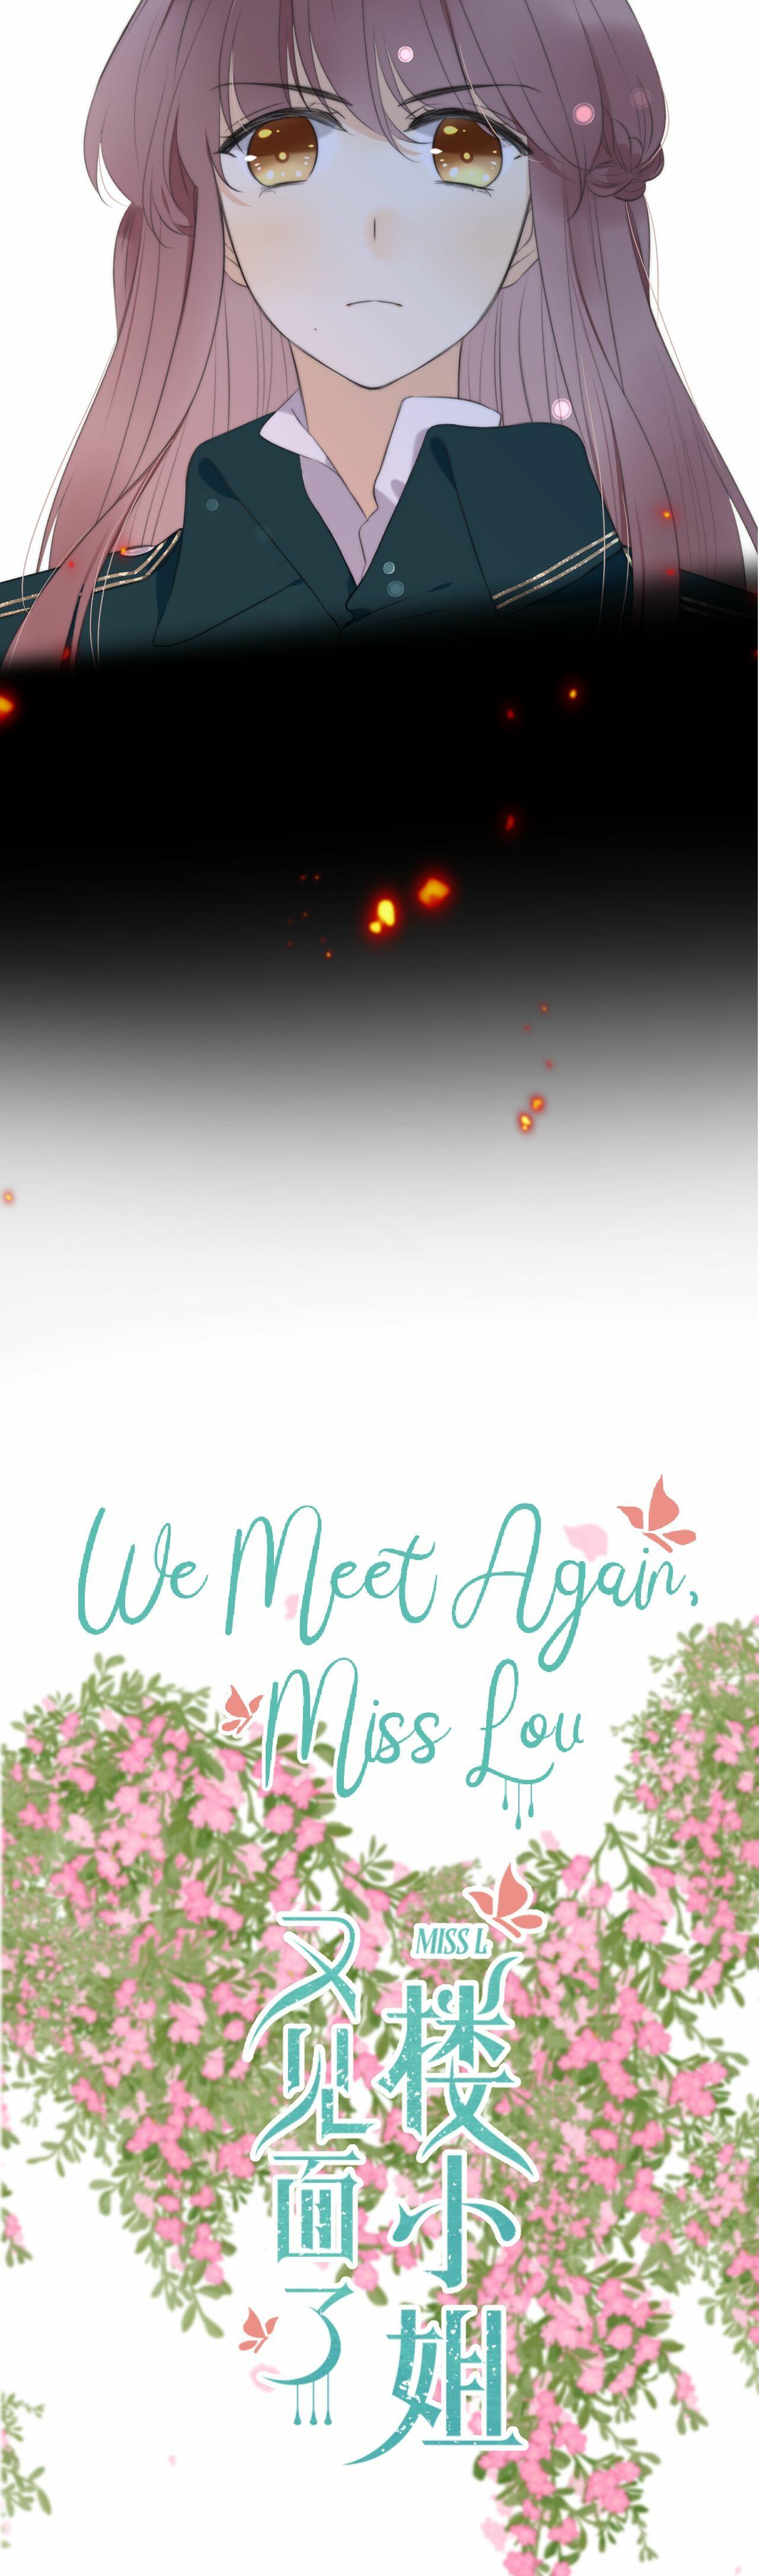 We Meet Again, Miss Lou Ch.34.1 Page 7 - Mangago